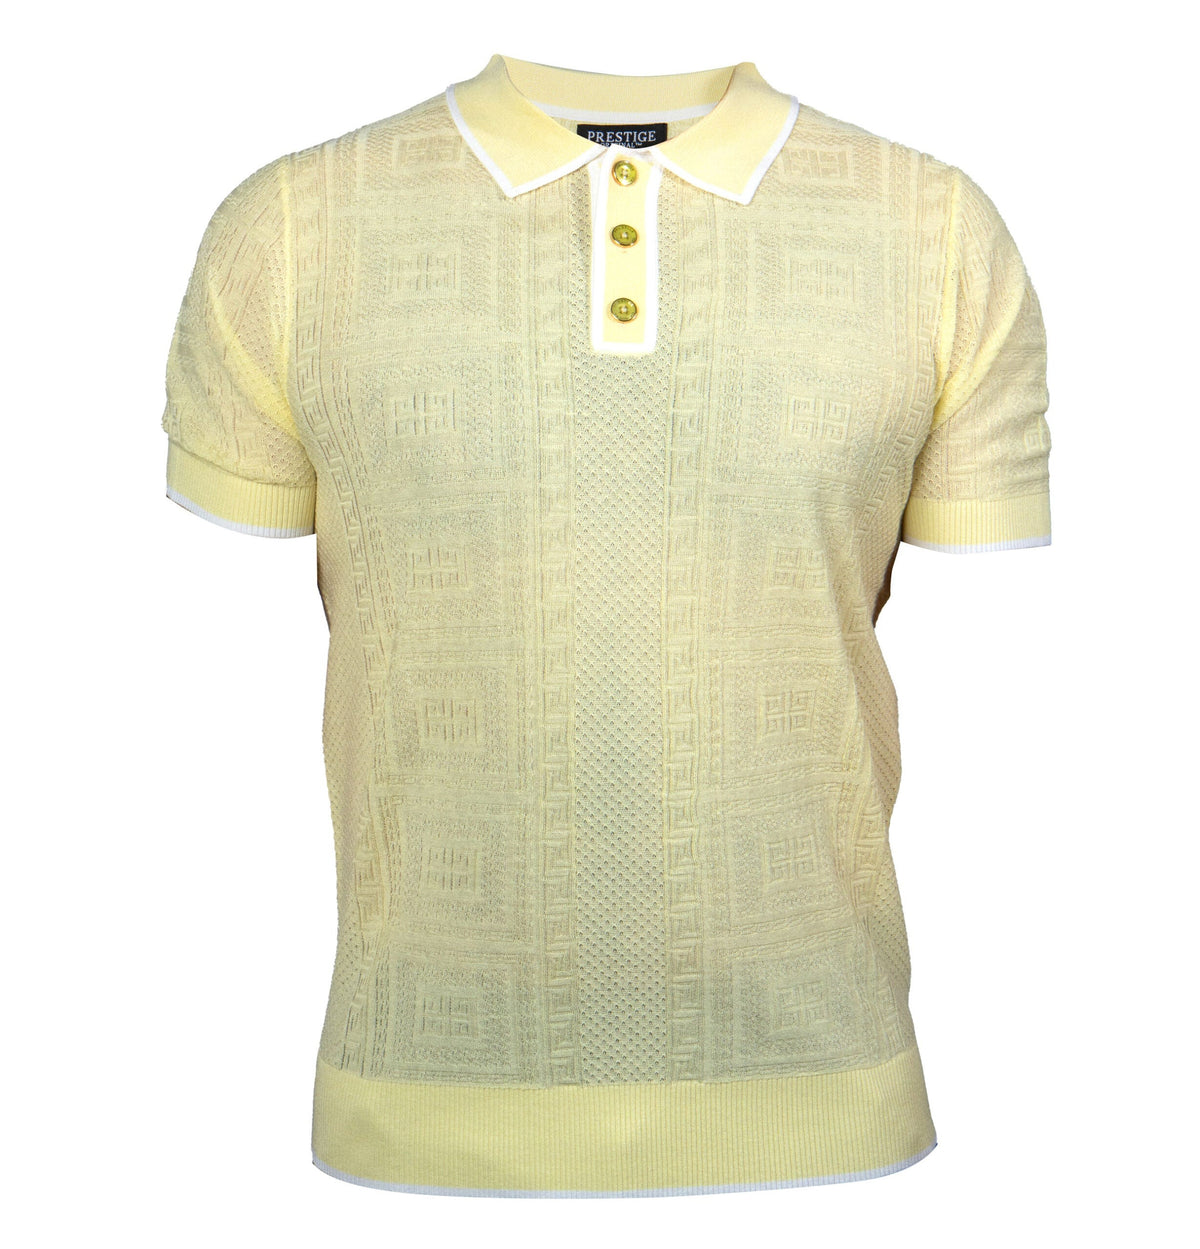 Prestige Yellow Greek Key Knit Button Polo Shirt - Dudes Boutique